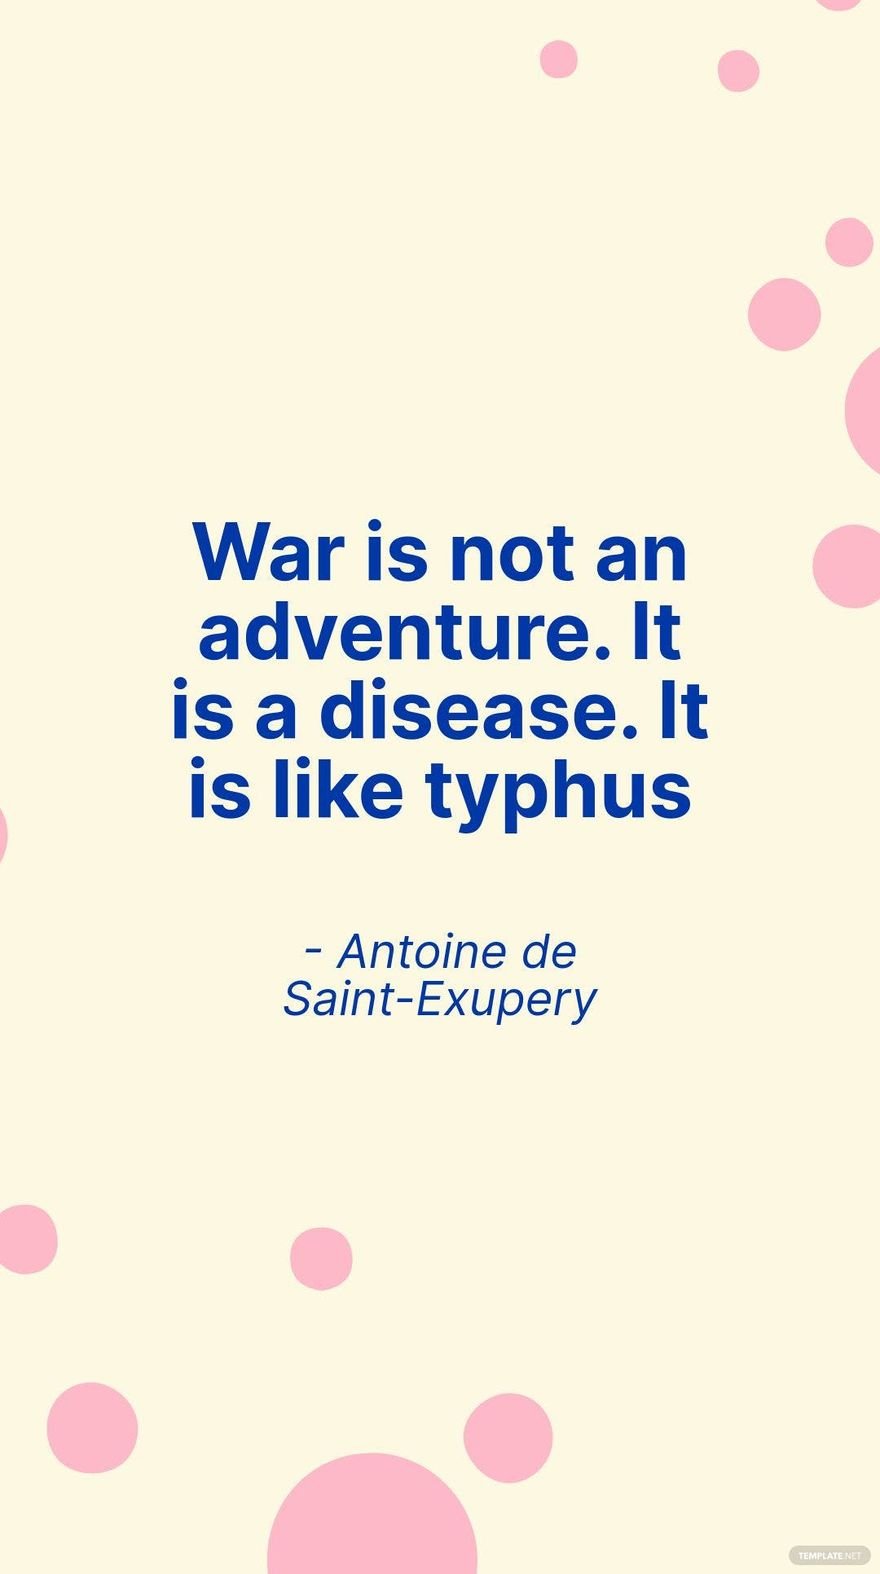 Antoine de Saint-Exupery - War is not an adventure. It is a disease. It is like typhus in JPG